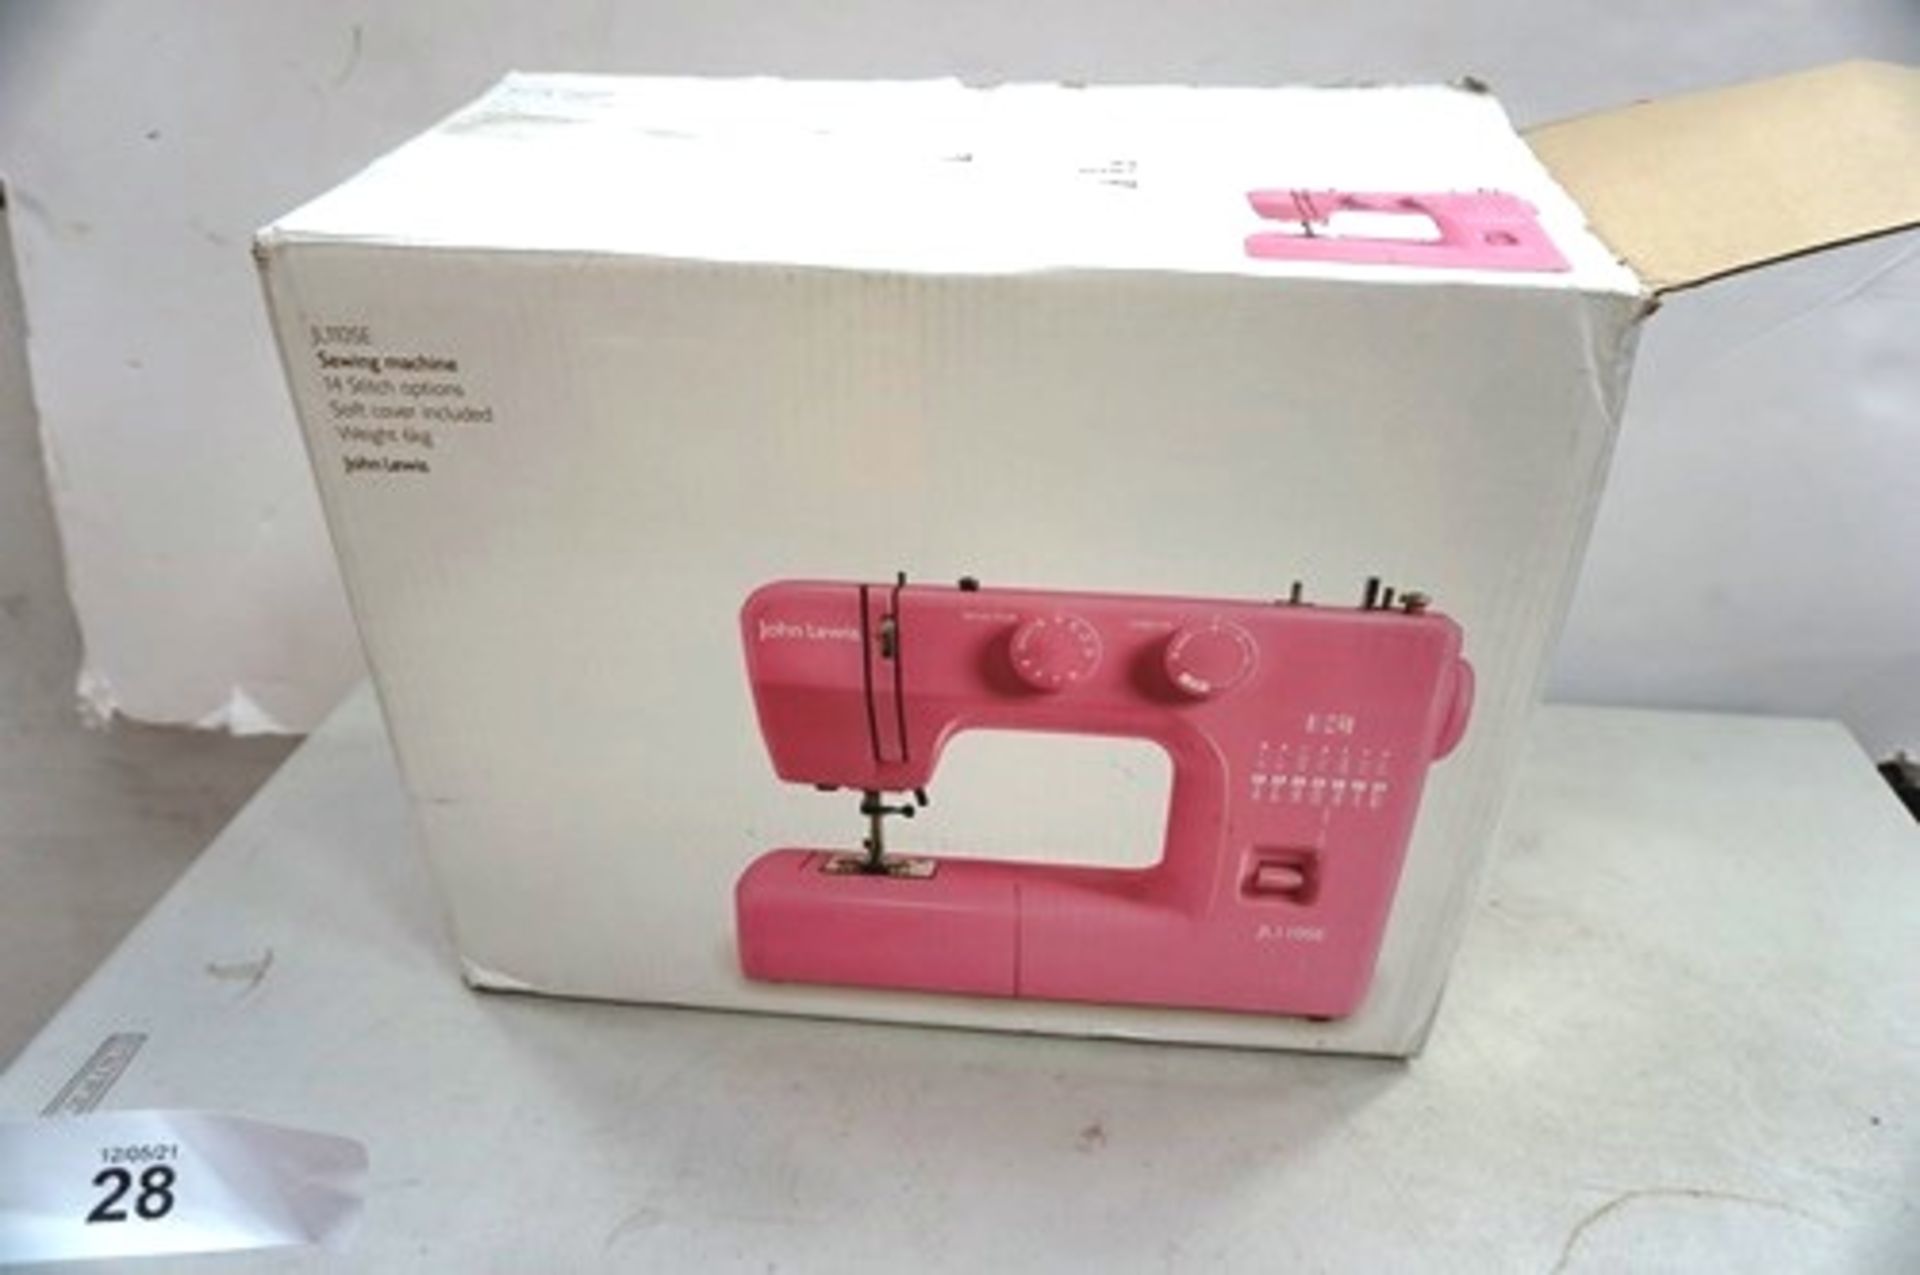 1 x John Lewis pink sewing machine, model JL110SE - New in box (ES3)